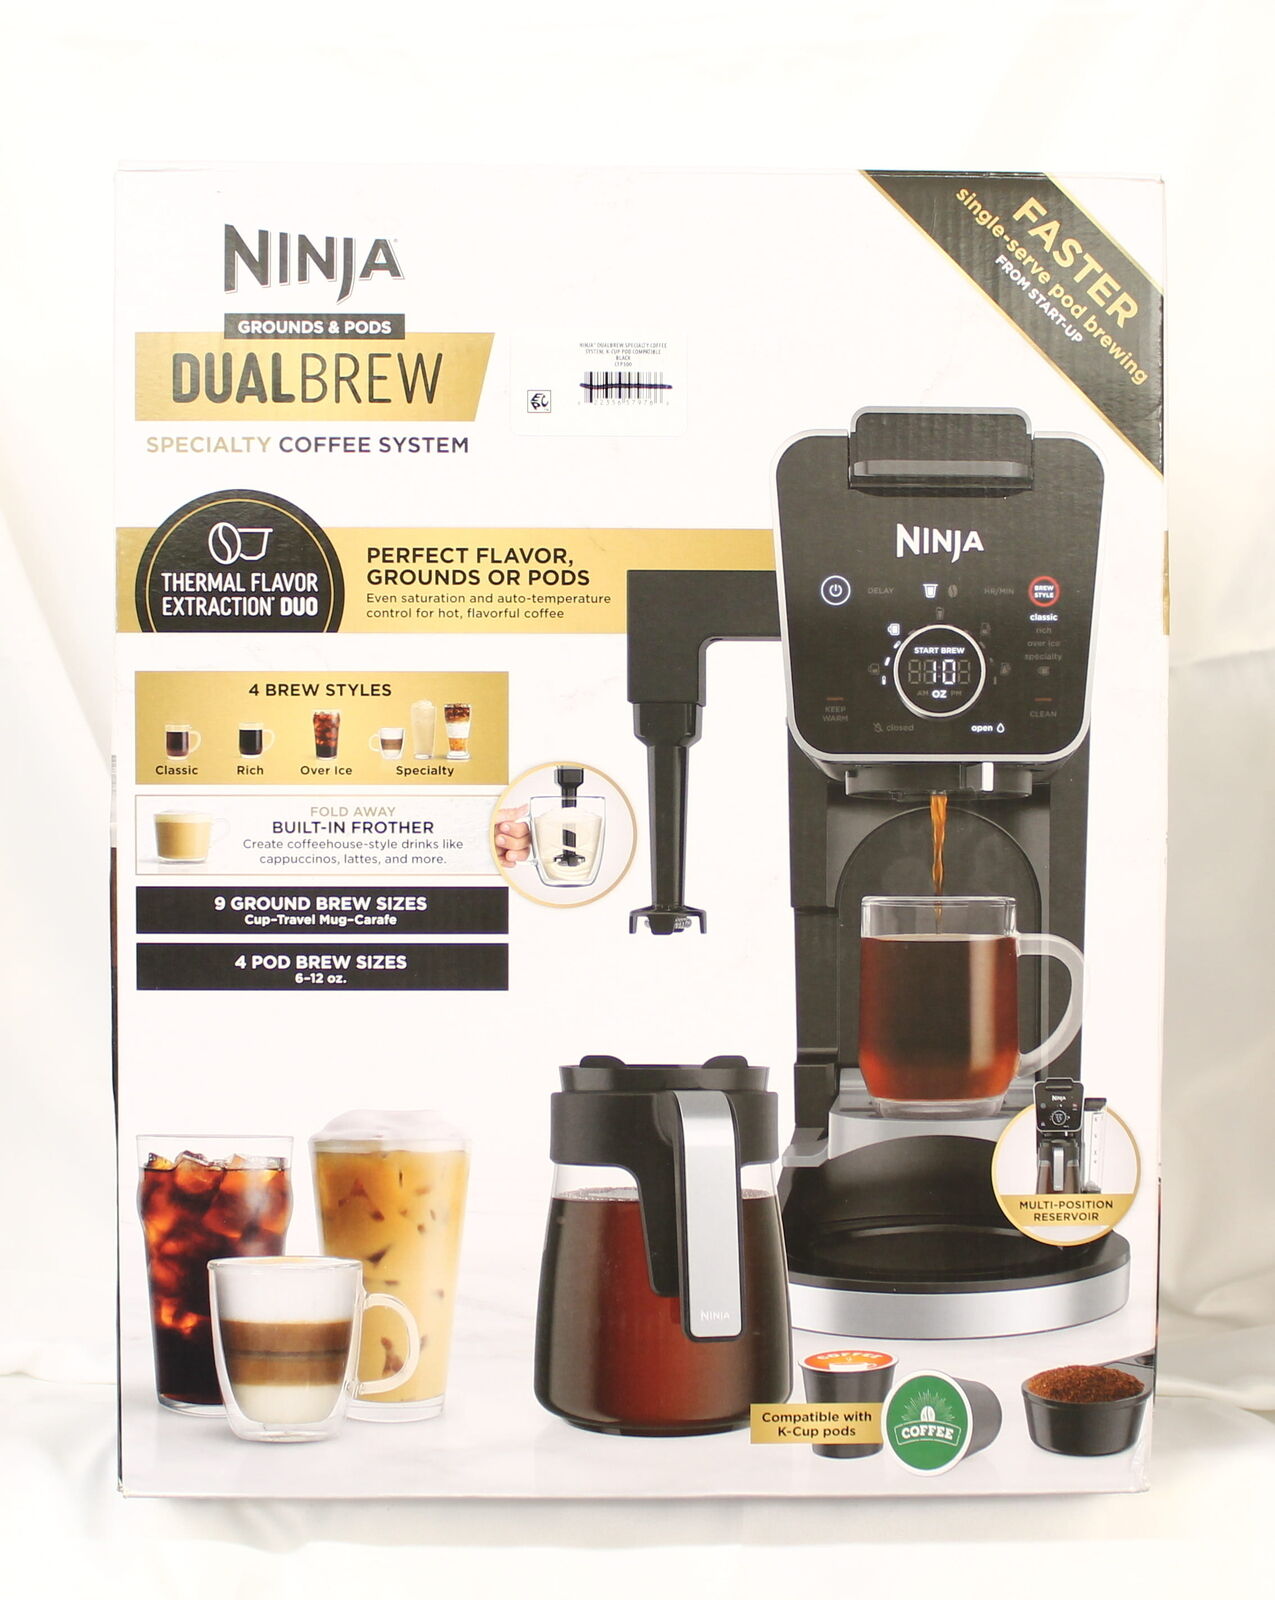 Ninja Dual Brew Specialty Coffee System